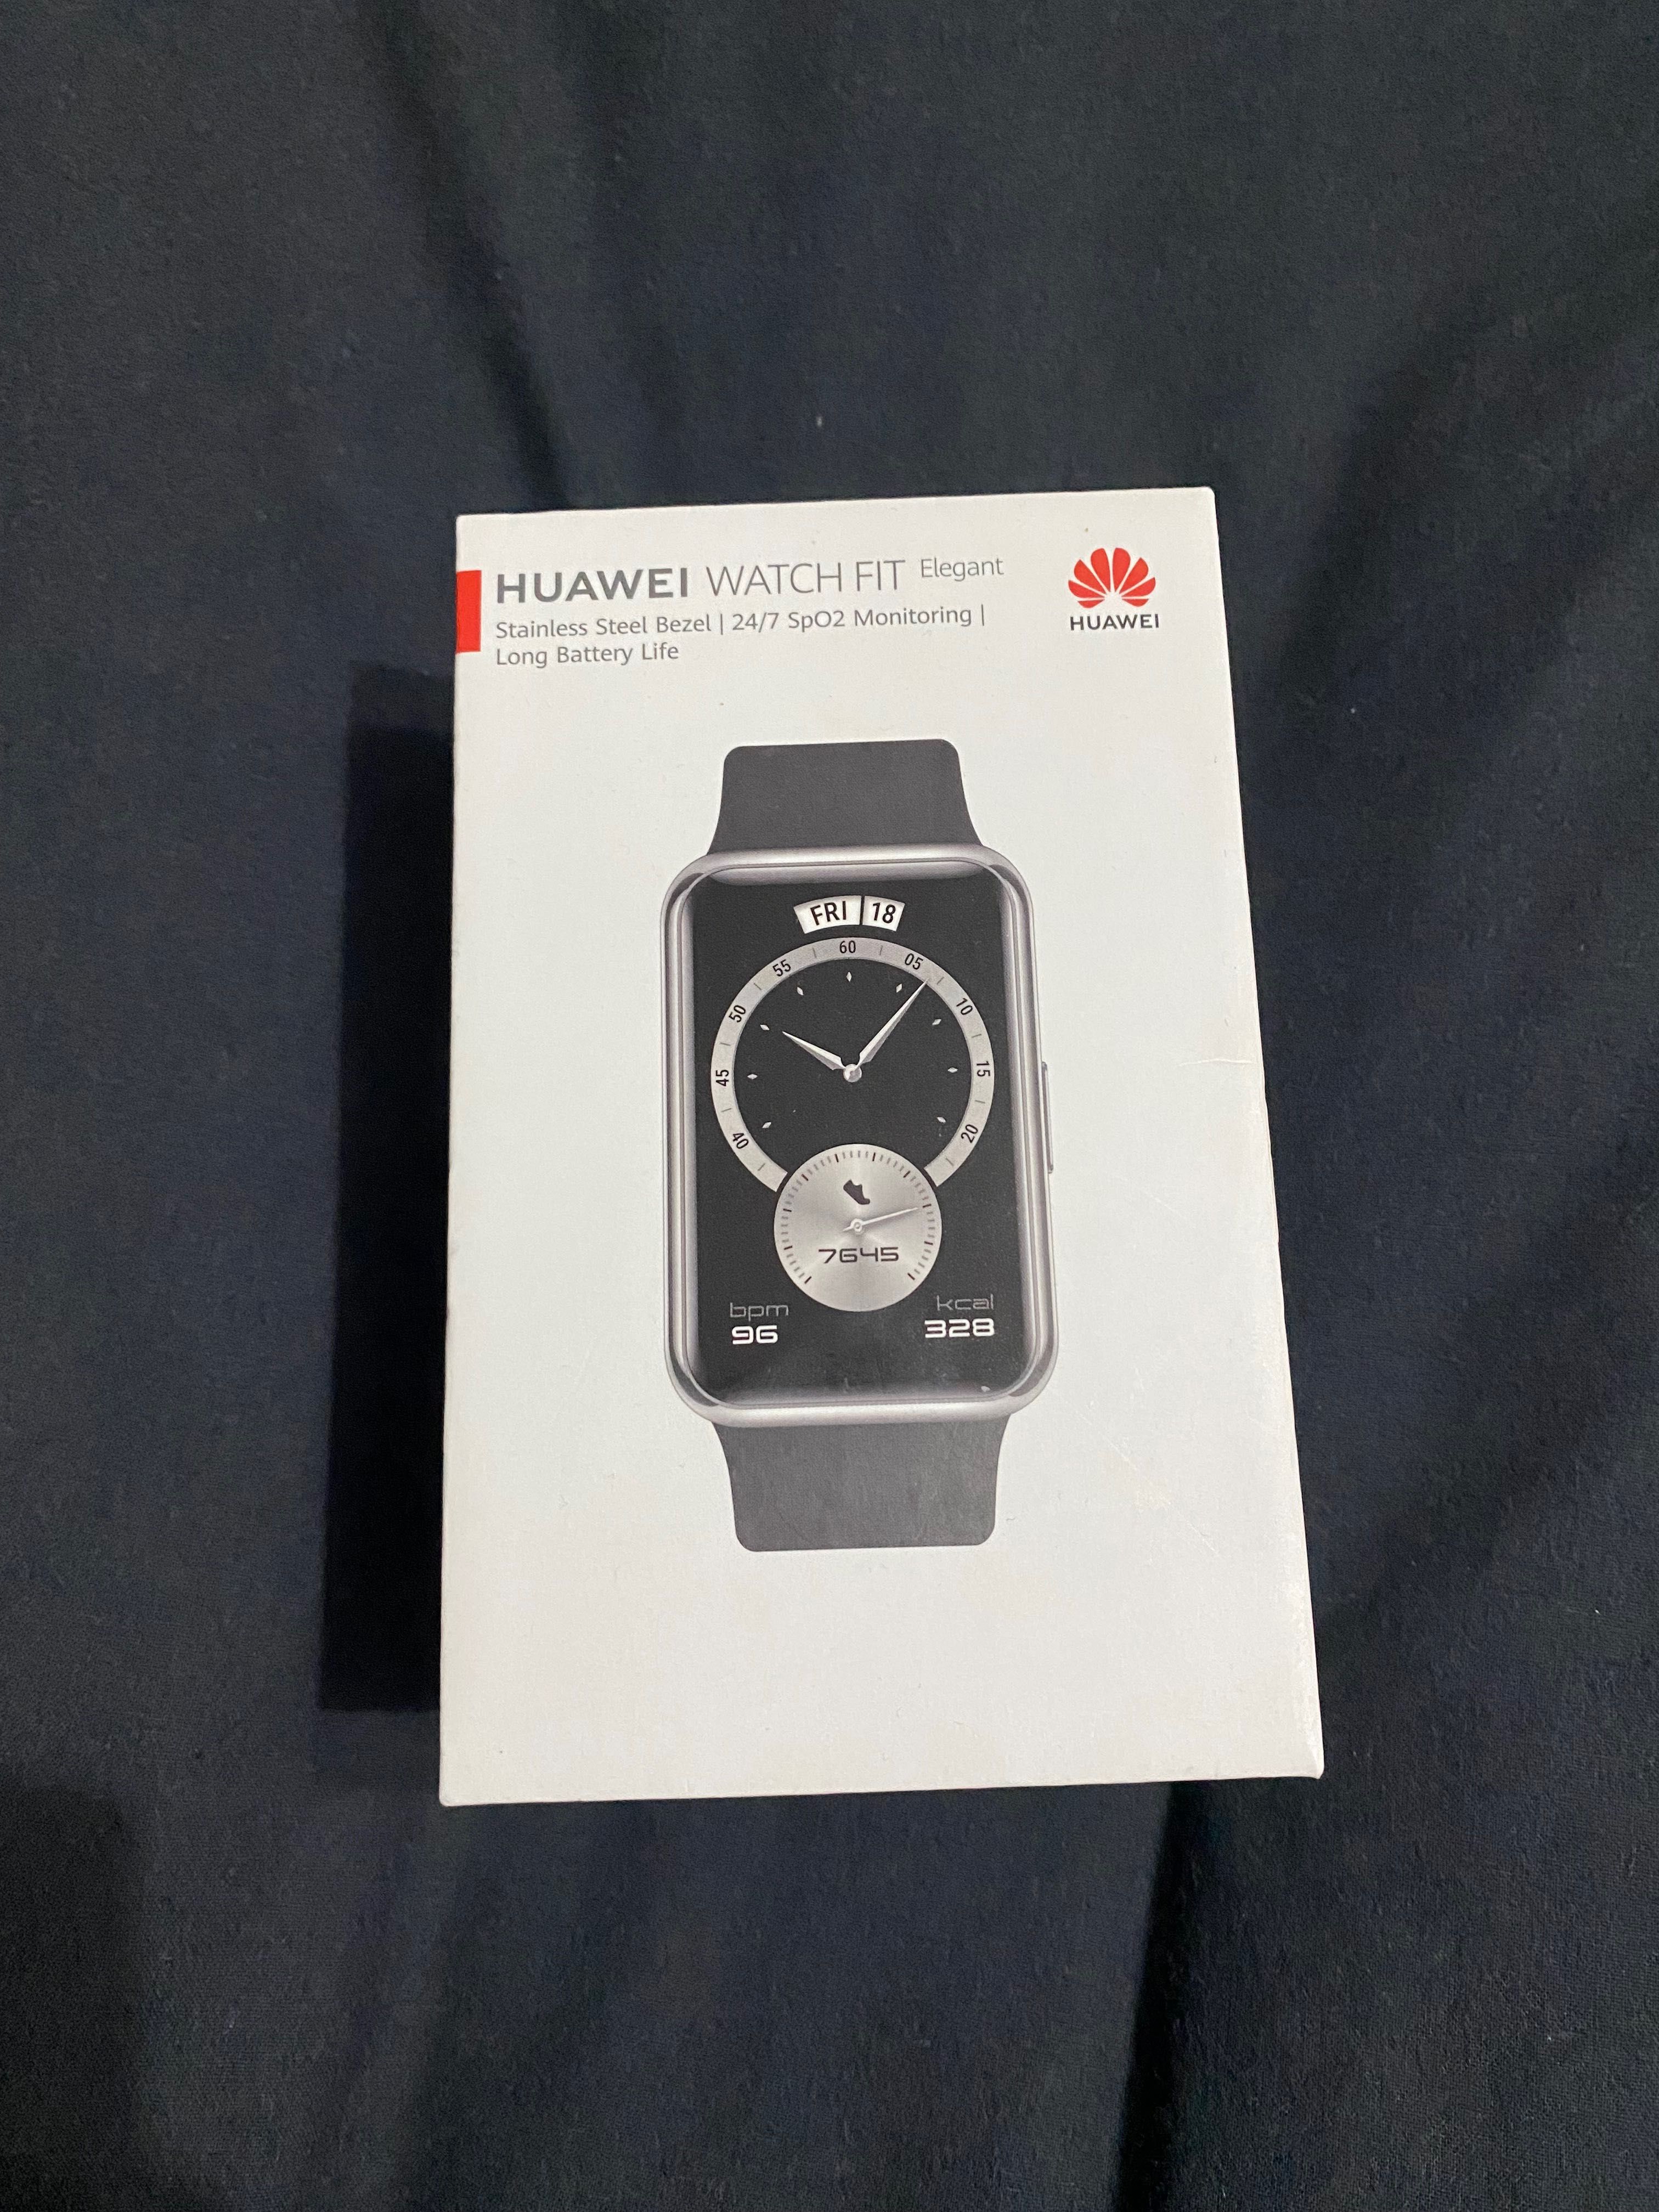 Huawei Watch fit - 300 RON